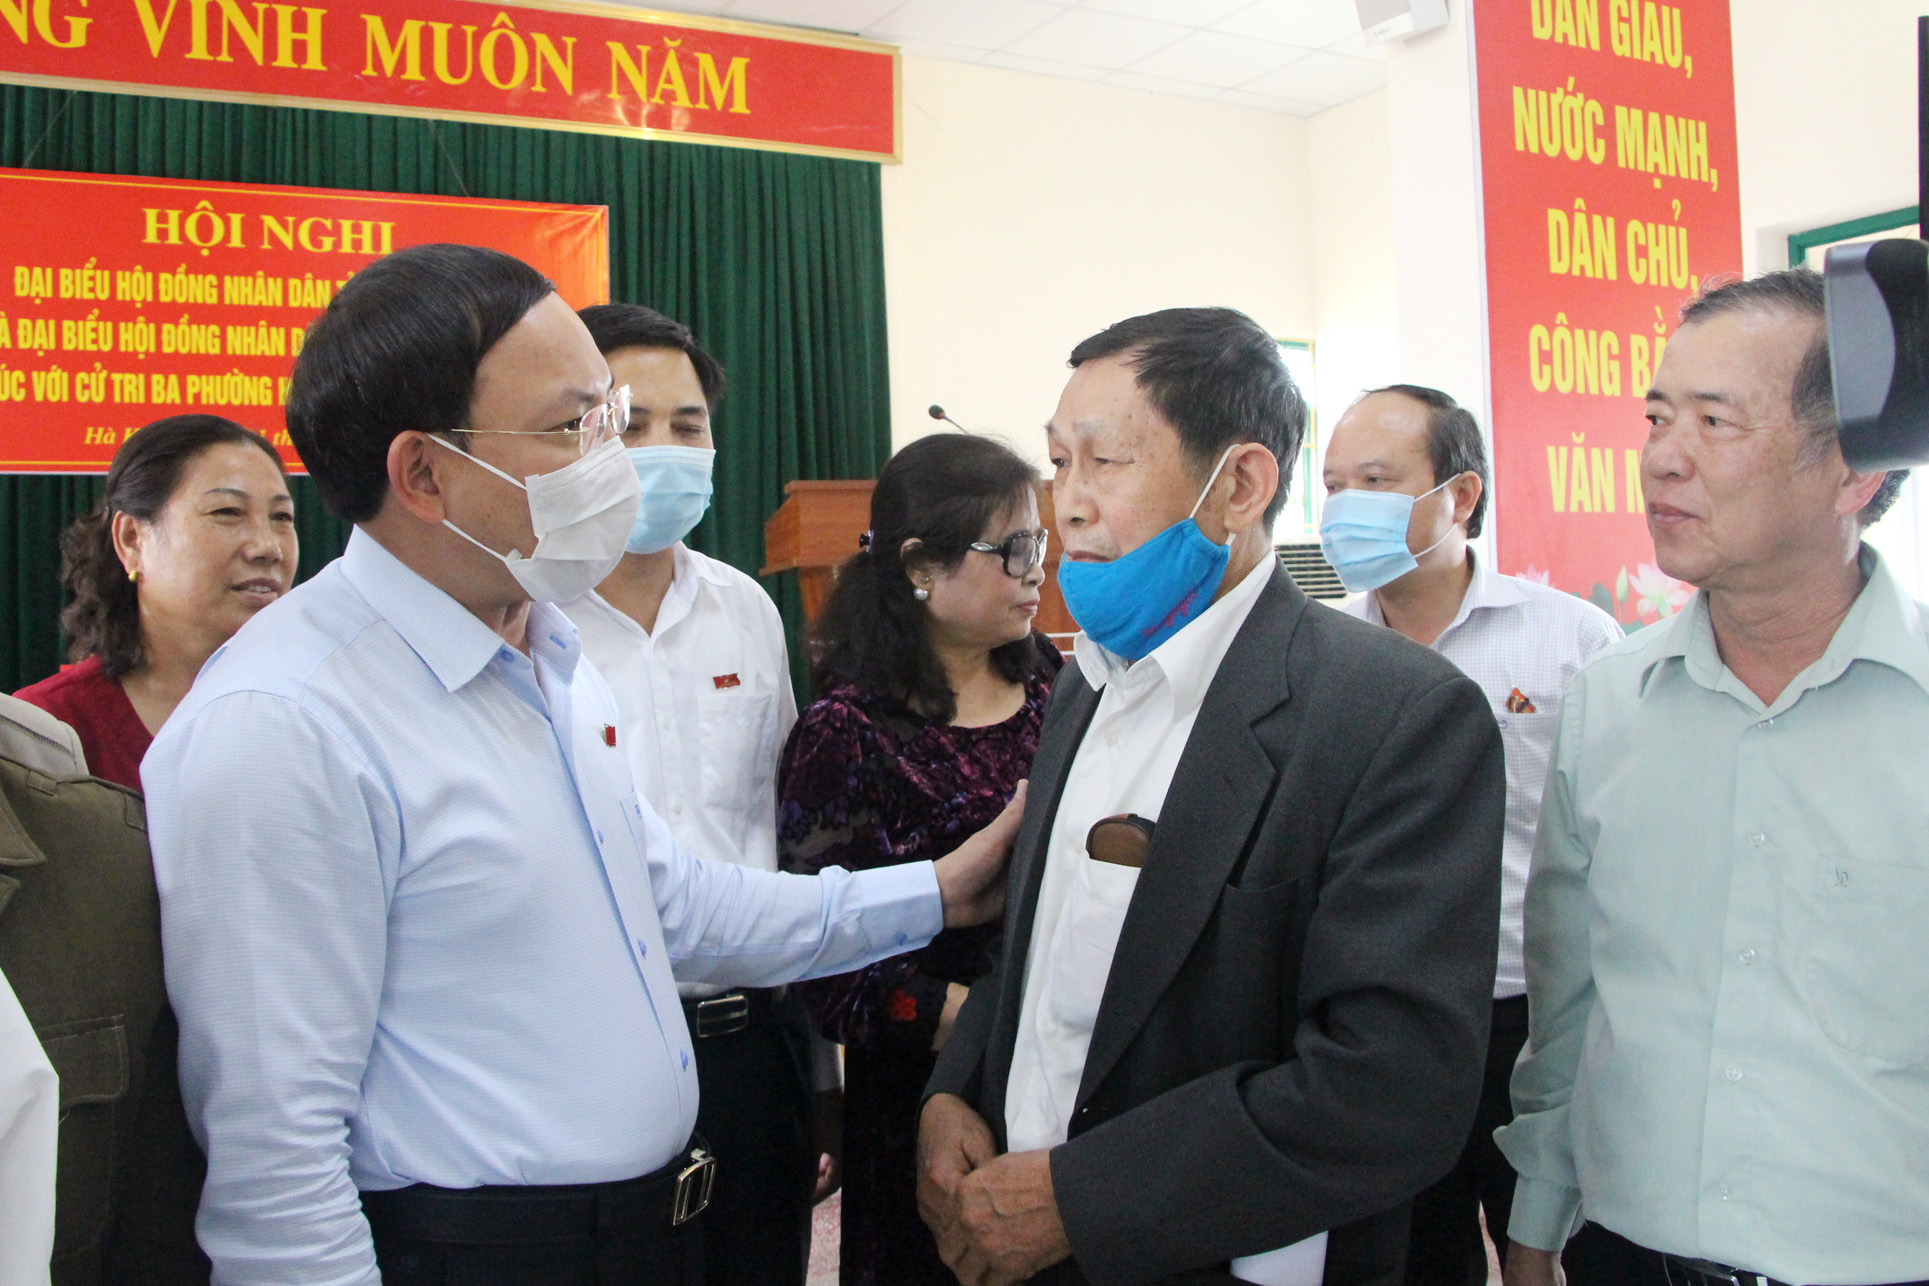 Đồng chí Nguyễn Xuân Ký, Bí thư Tỉnh ủy, Chủ tịch HĐND tỉnh, trò chuyện với các cử tri.